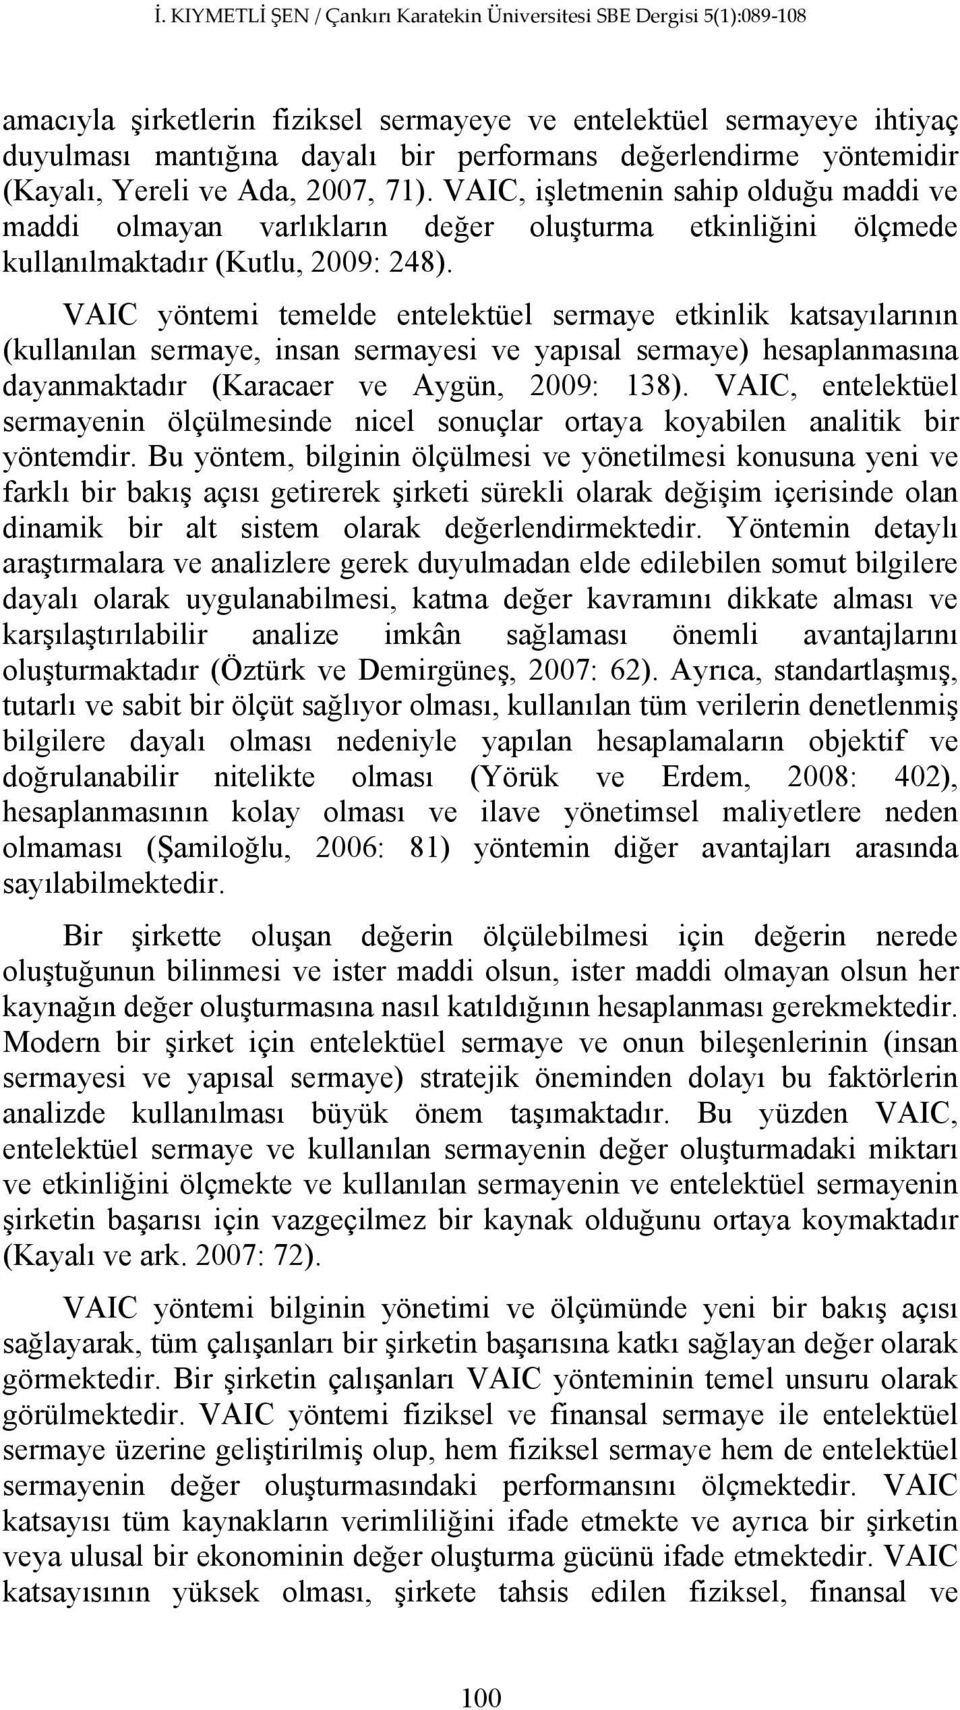 VAIC yöntemi temelde entelektüel sermaye etkinlik katsayılarının (kullanılan sermaye, insan sermayesi ve yapısal sermaye) hesaplanmasına dayanmaktadır (Karacaer ve Aygün, 2009: 138).